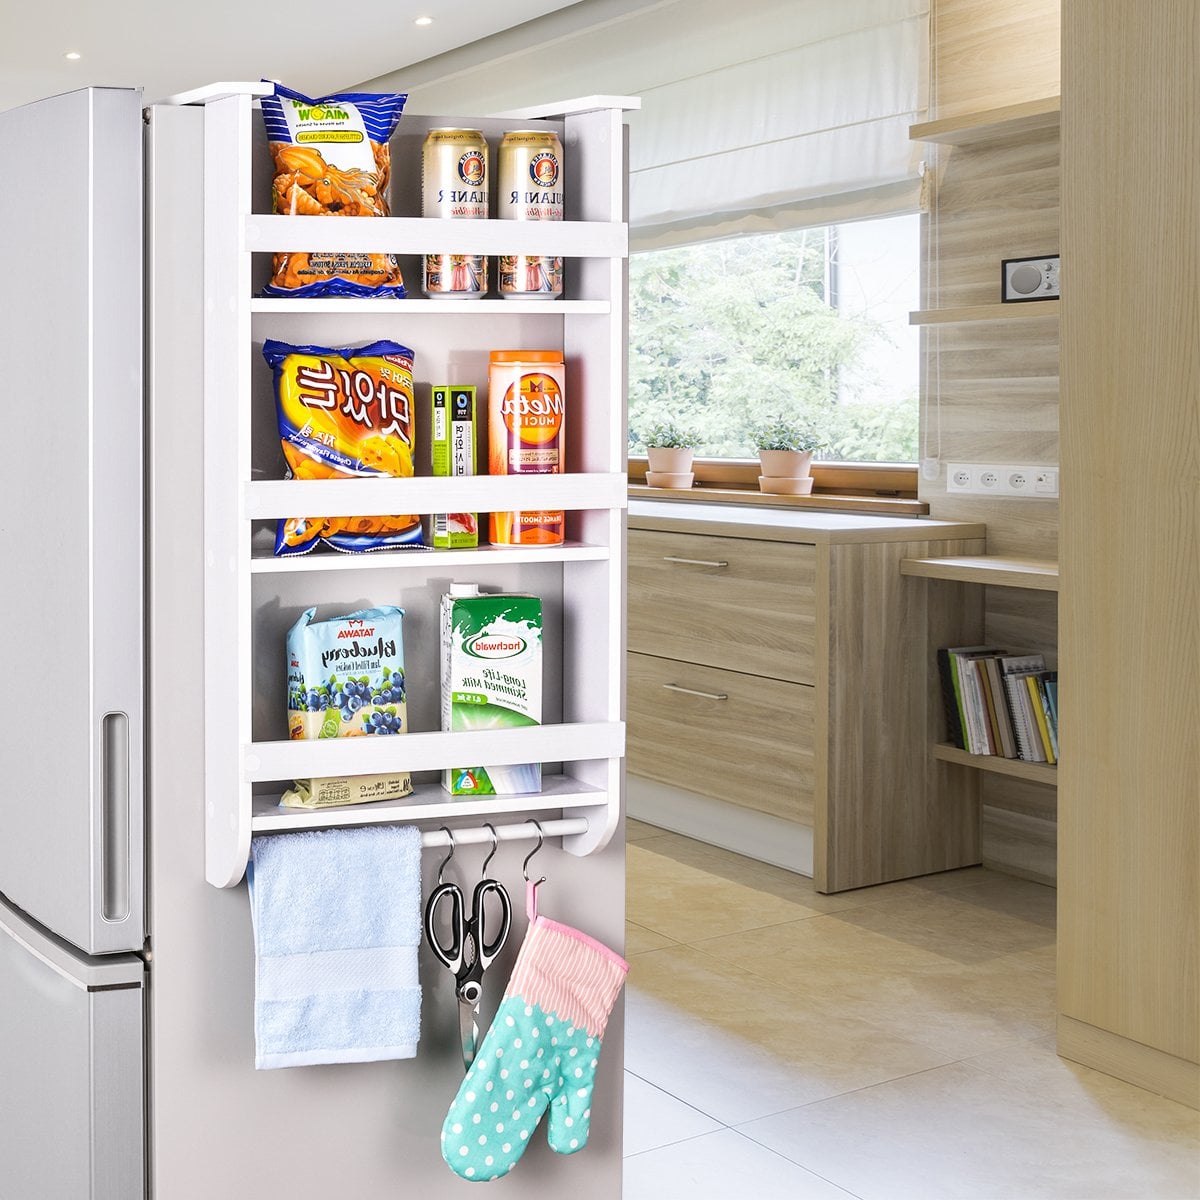 Khi tủ lạnh của bạn đã hết chỗ thì hãy nhanh chóng lắp đặt chiếc giá treo bằng nhựa gọn nhẹ này. 